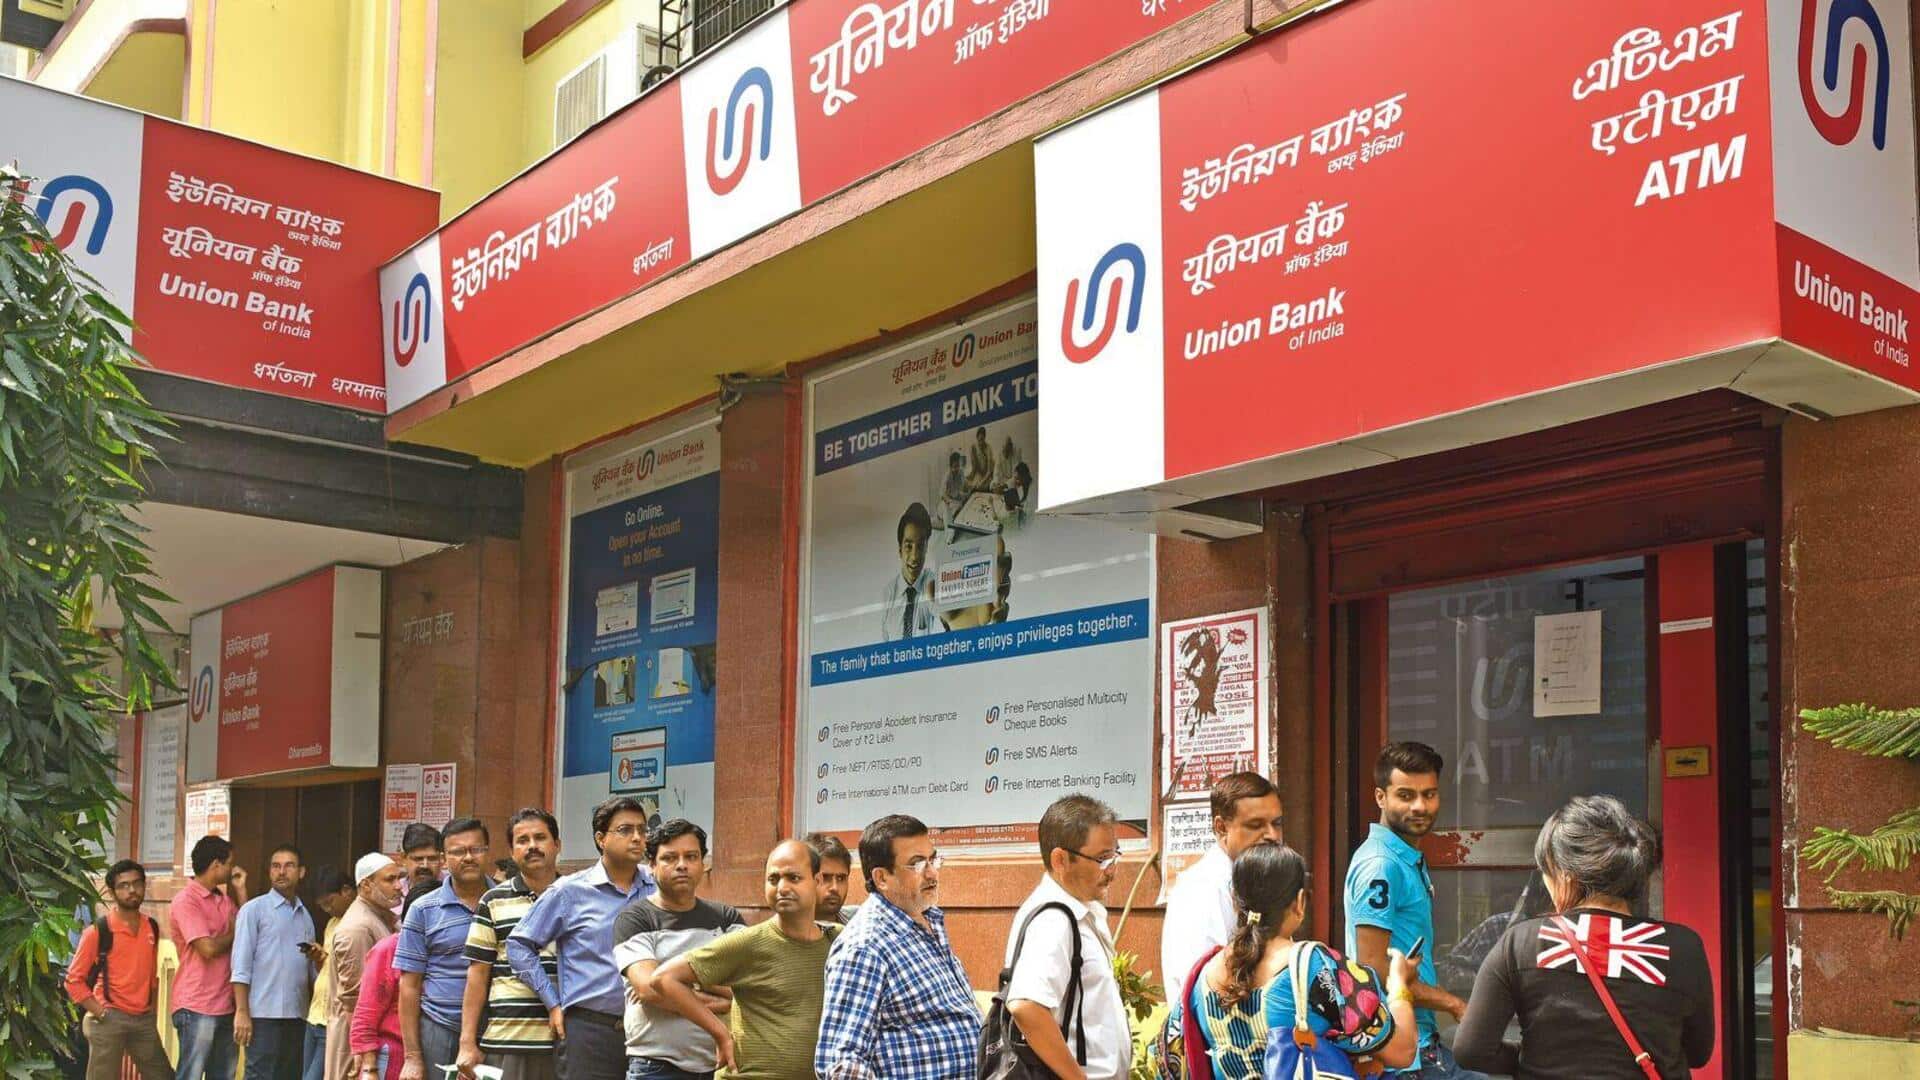 Union Bank surpasses Rs. 1L crore valuation; joins SBI, PNB